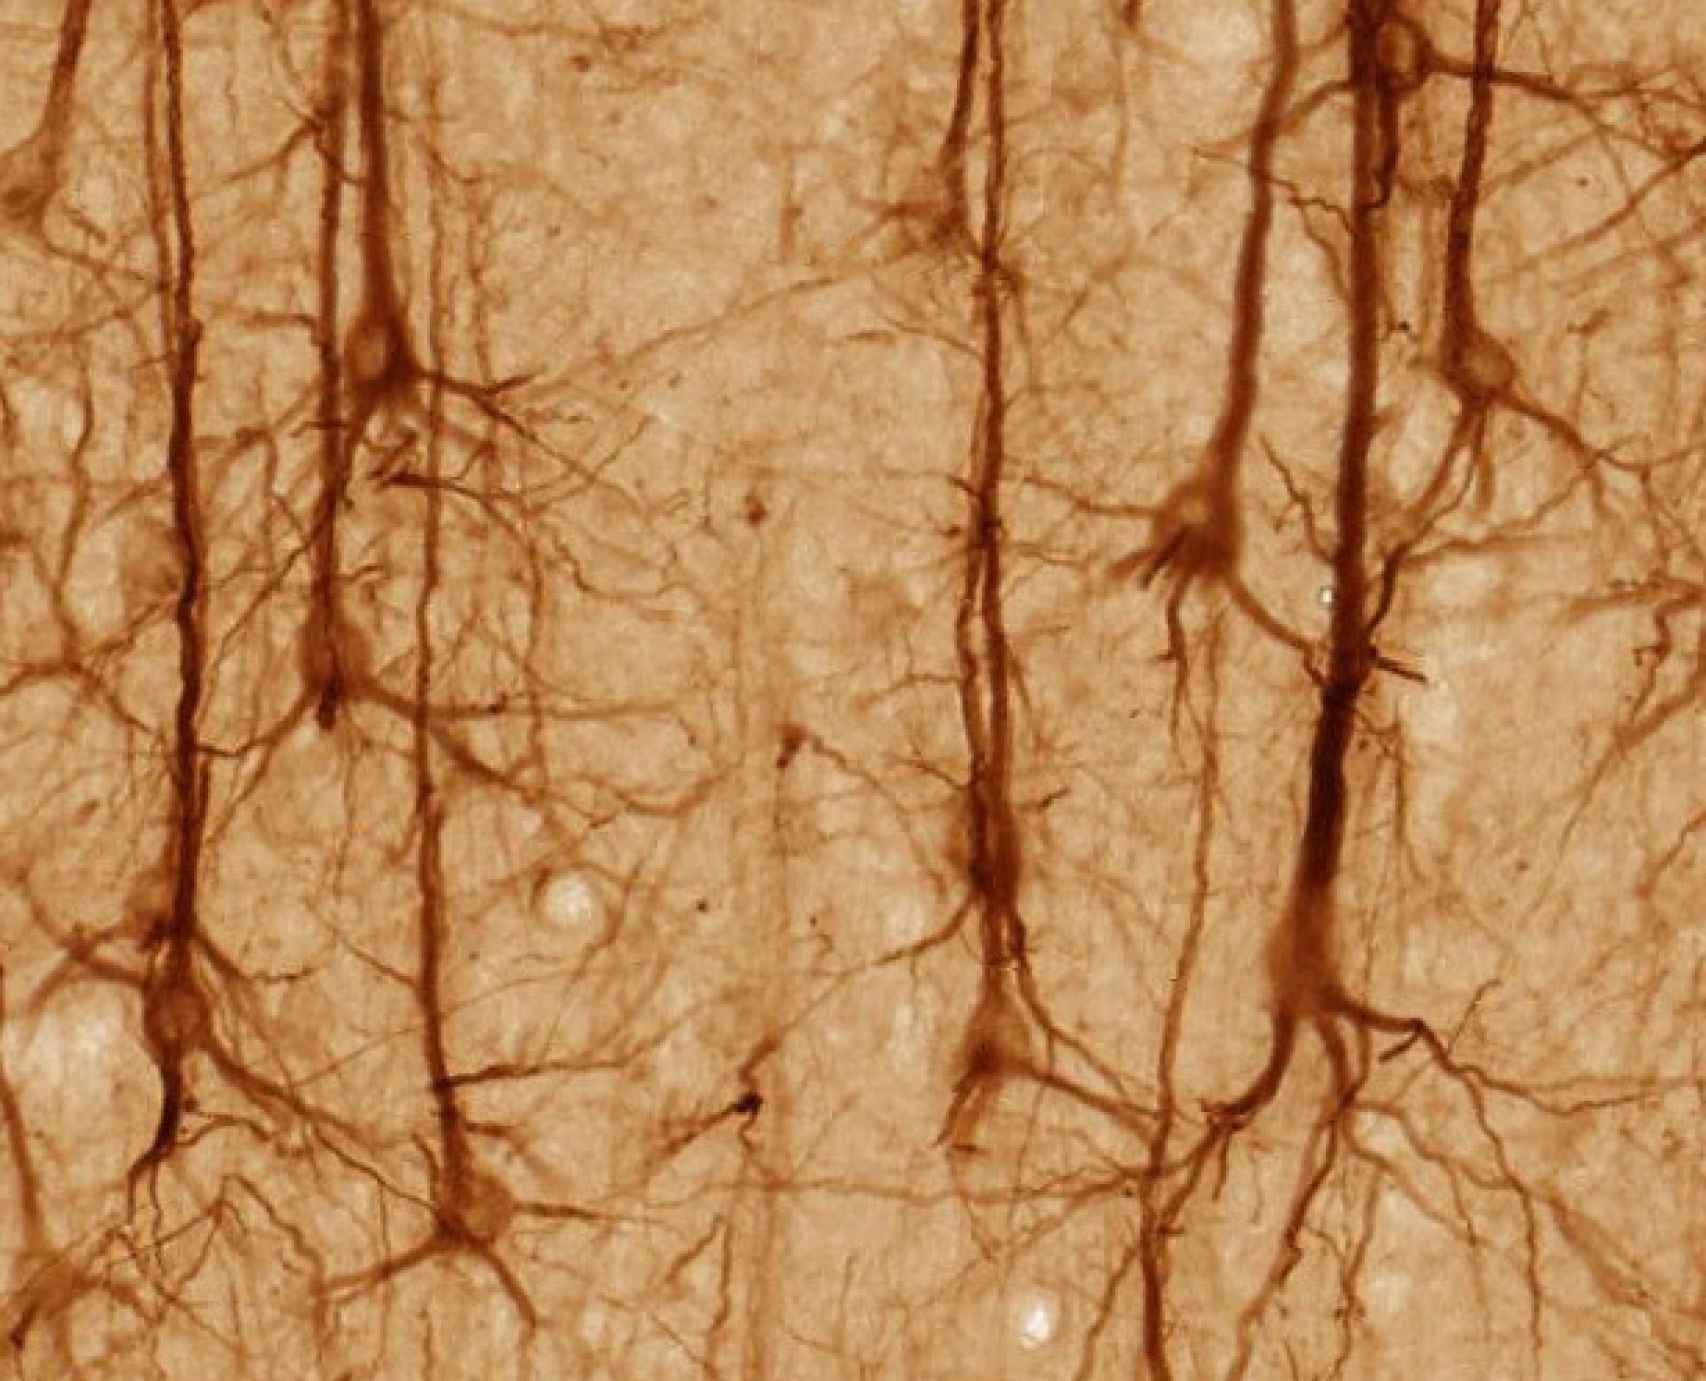 Neuronas del córtex cerebral